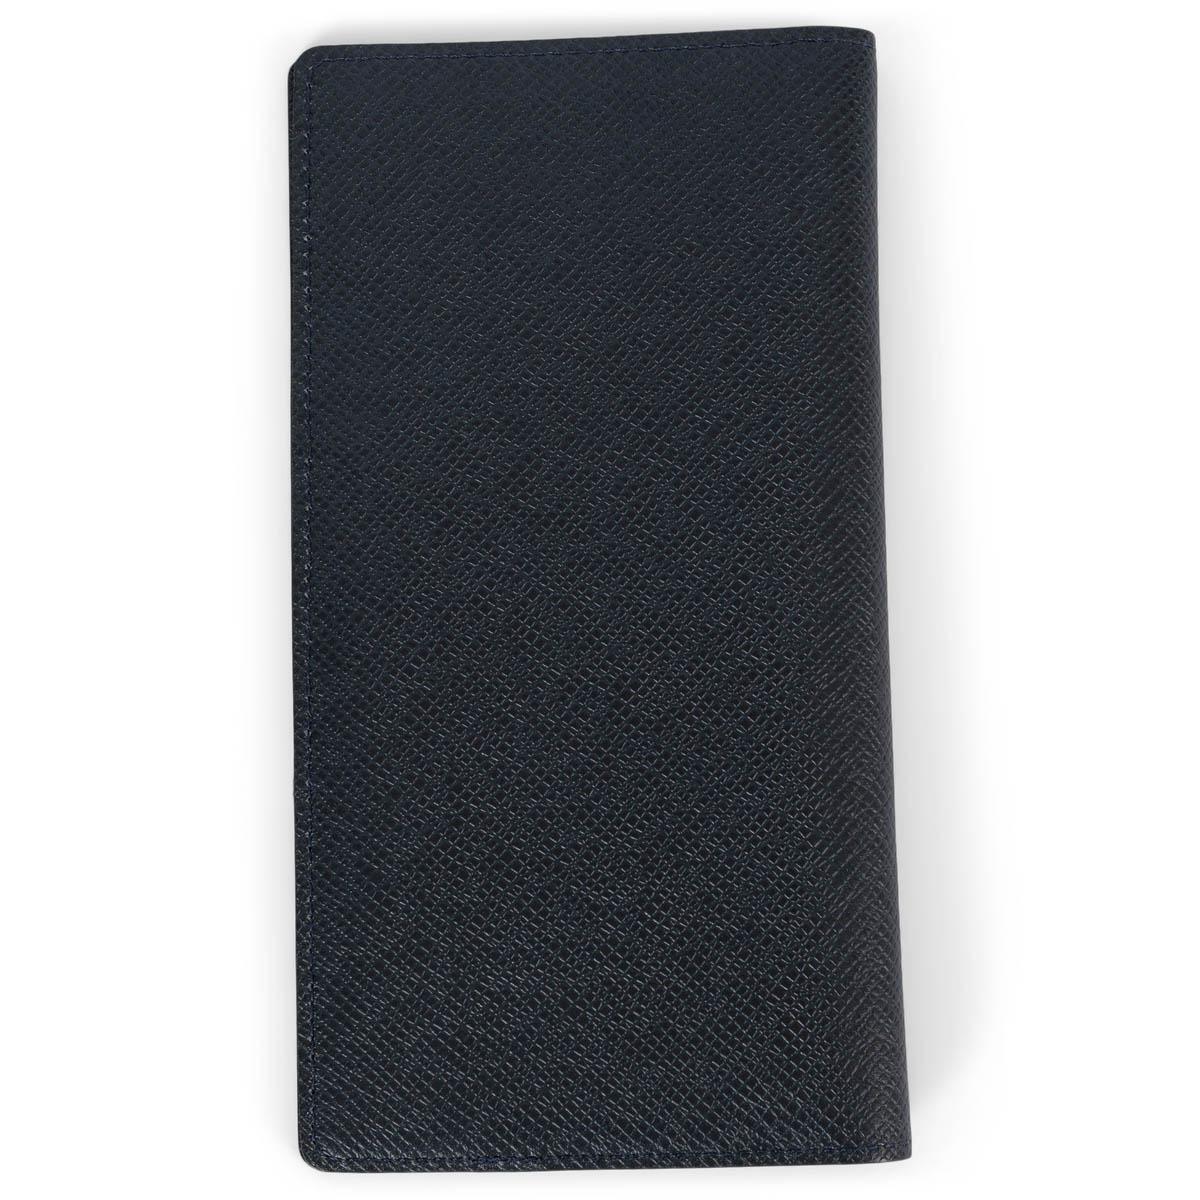 100% authentische Louis Vuitton Brazza Geldbörse aus schwarzem Taïga-Leder, der ersten Kollektion von Louis Vuitton für Männer. Das Design zeichnet sich durch verschiedene Taschen, Schlitze und Fächer aus, die auf der Unterseite diskret mit den